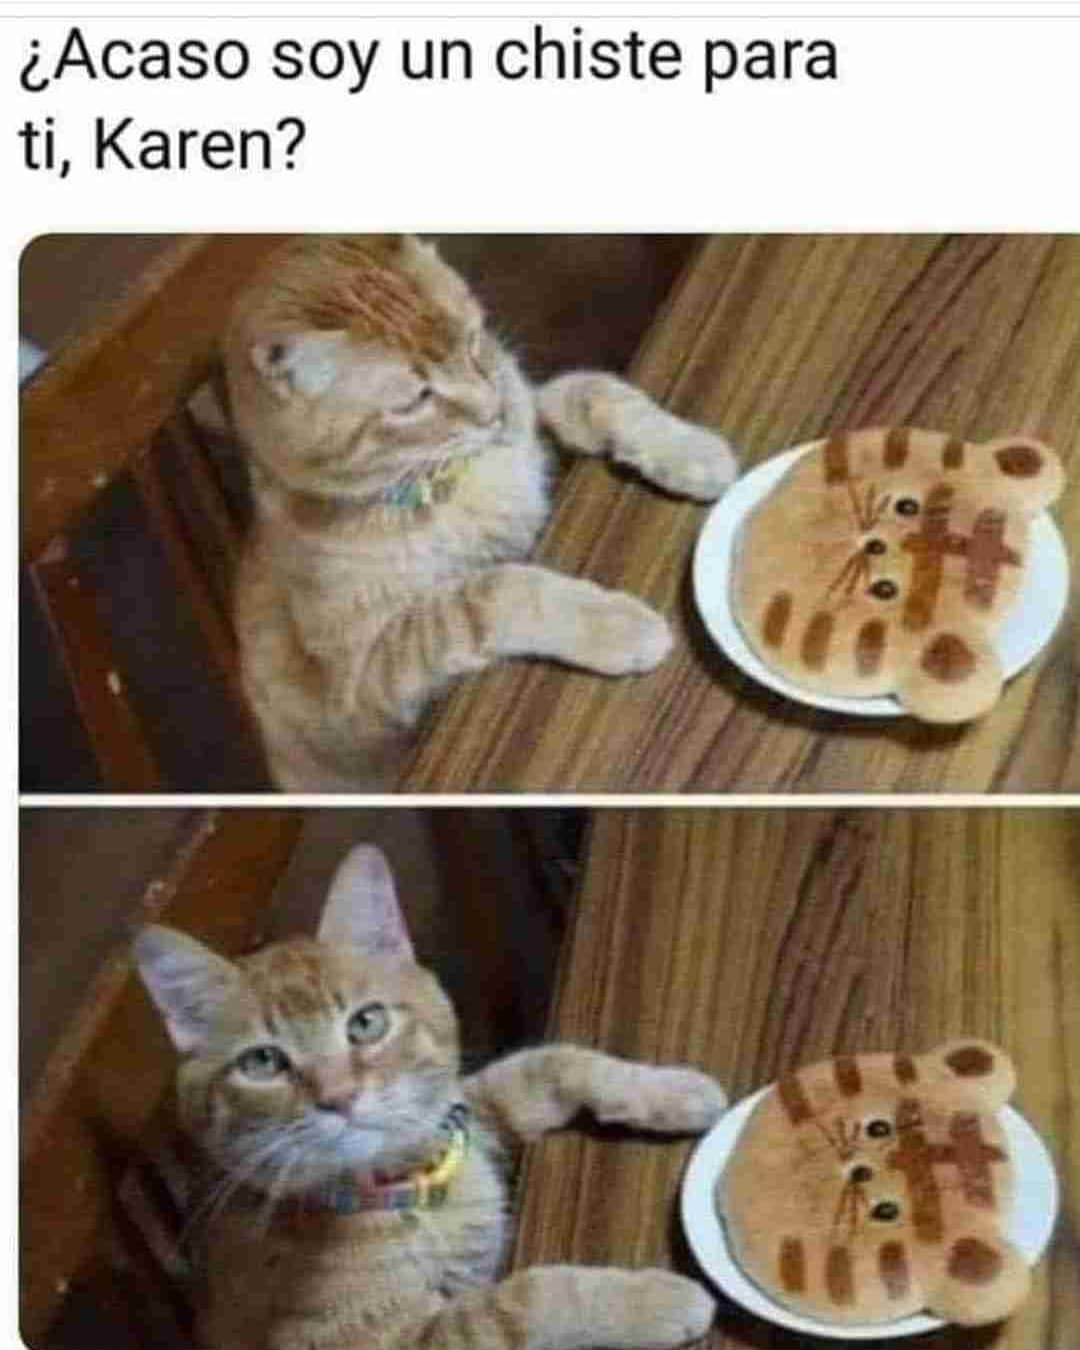 ¿Acaso soy un chiste para ti, Karen?